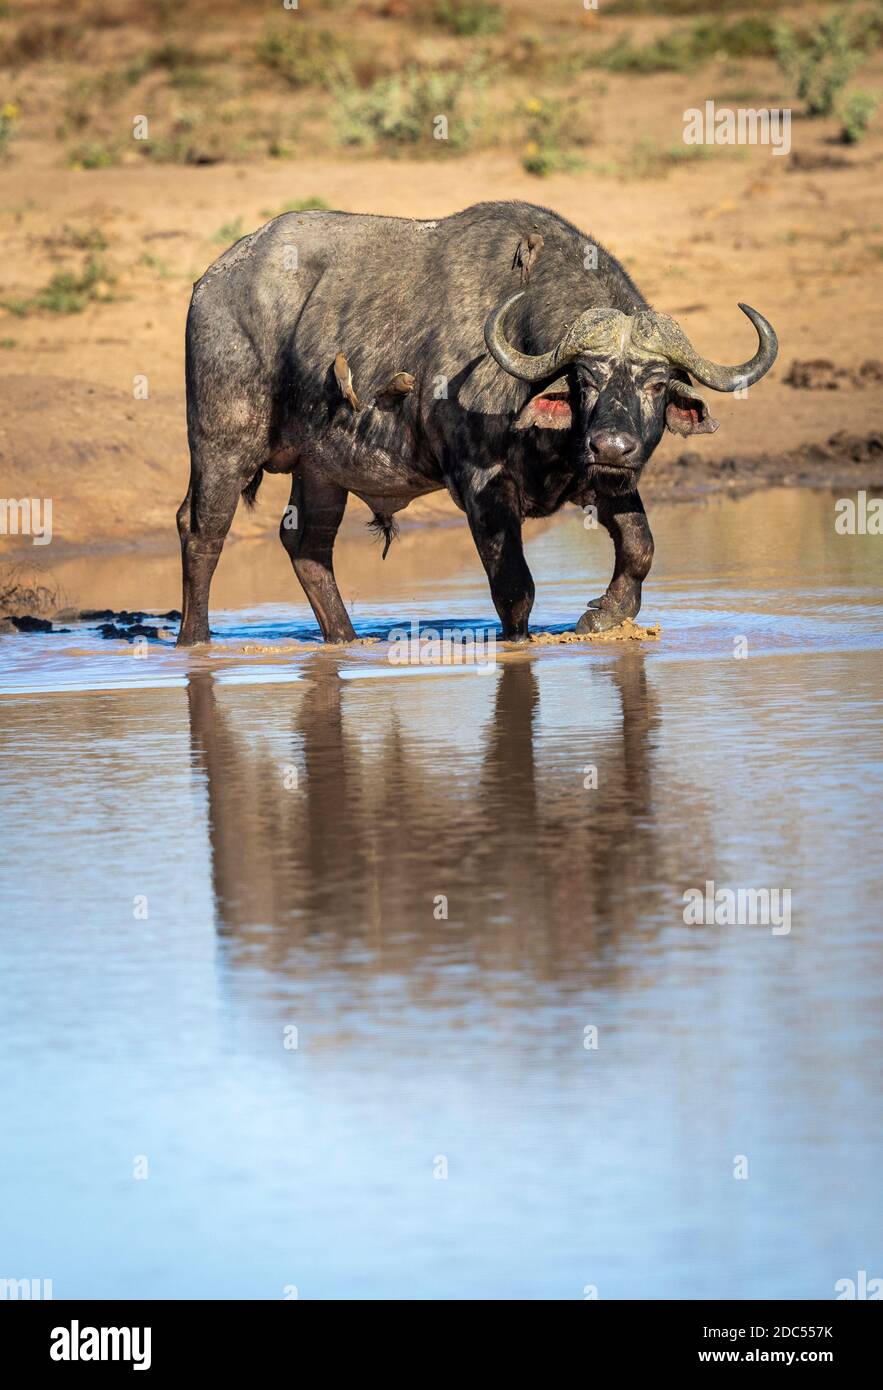 Toro de búfalo adulto con buey peckers en su espalda caminando En el agua en el borde del río en el Parque Kruger En Sudáfrica Foto de stock